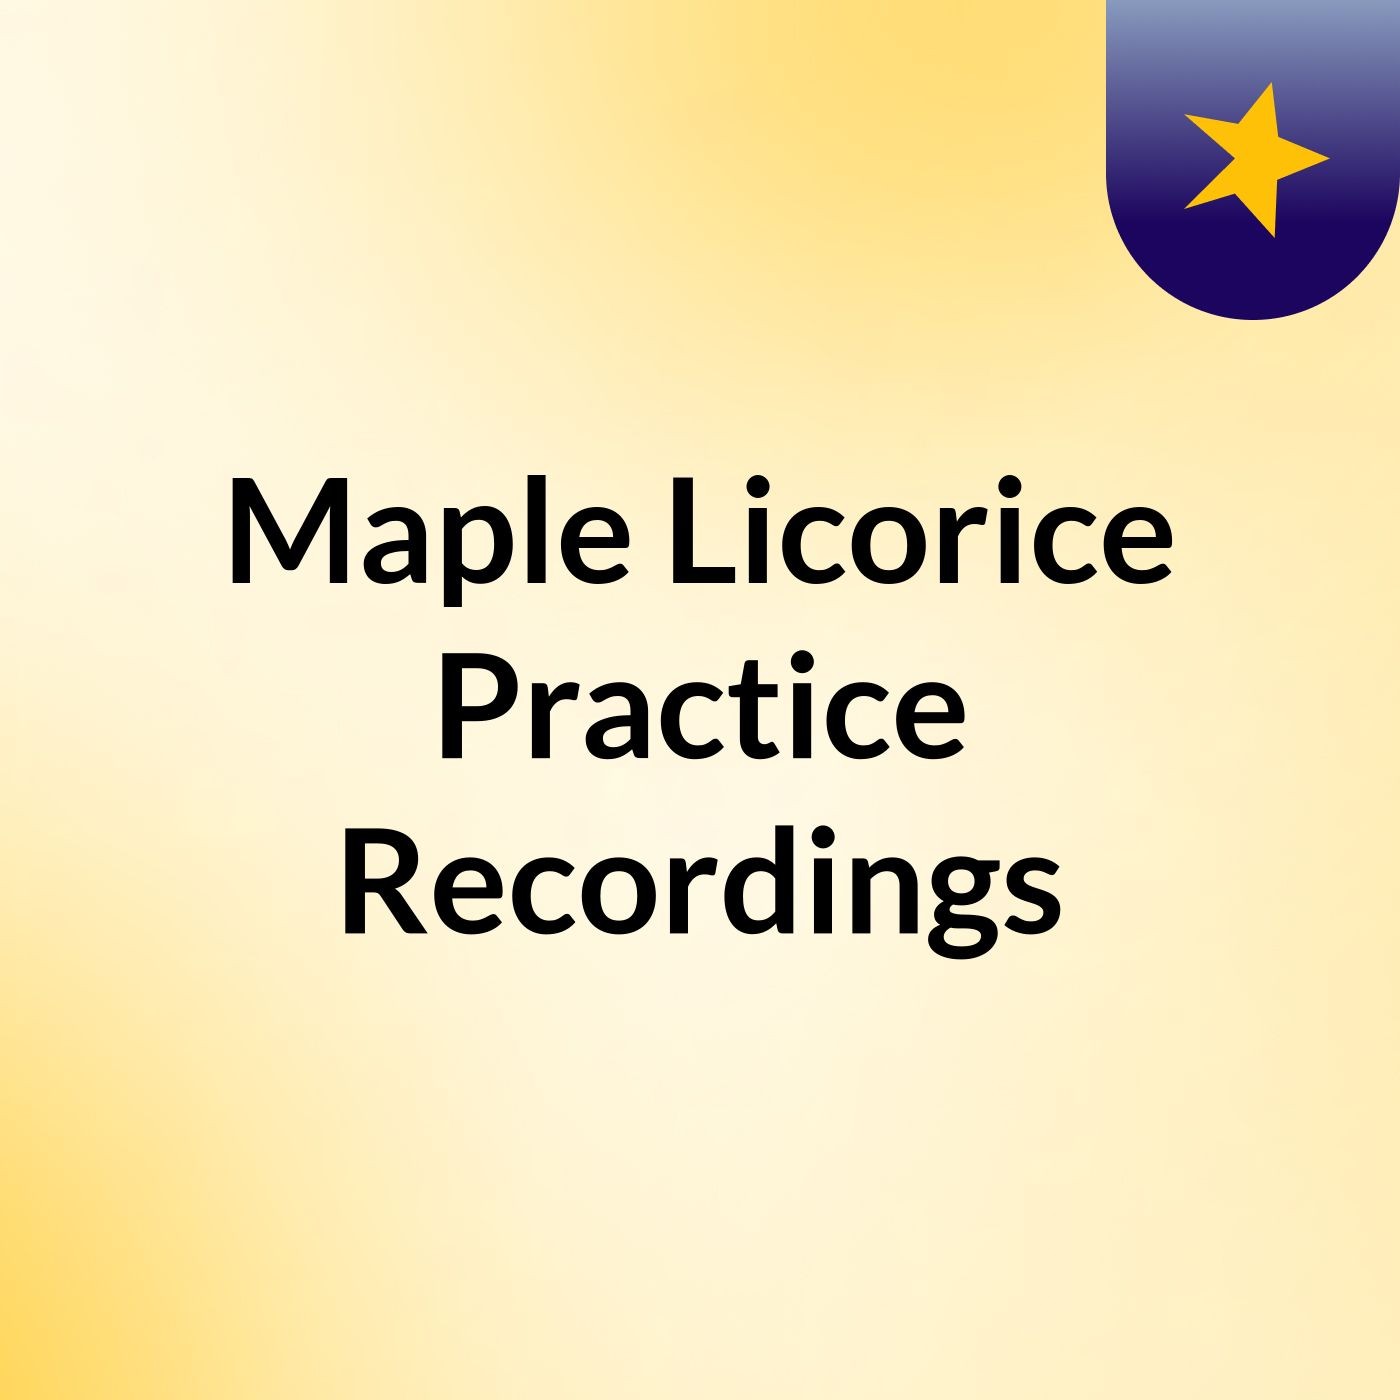 Maple Licorice Practice Recordings